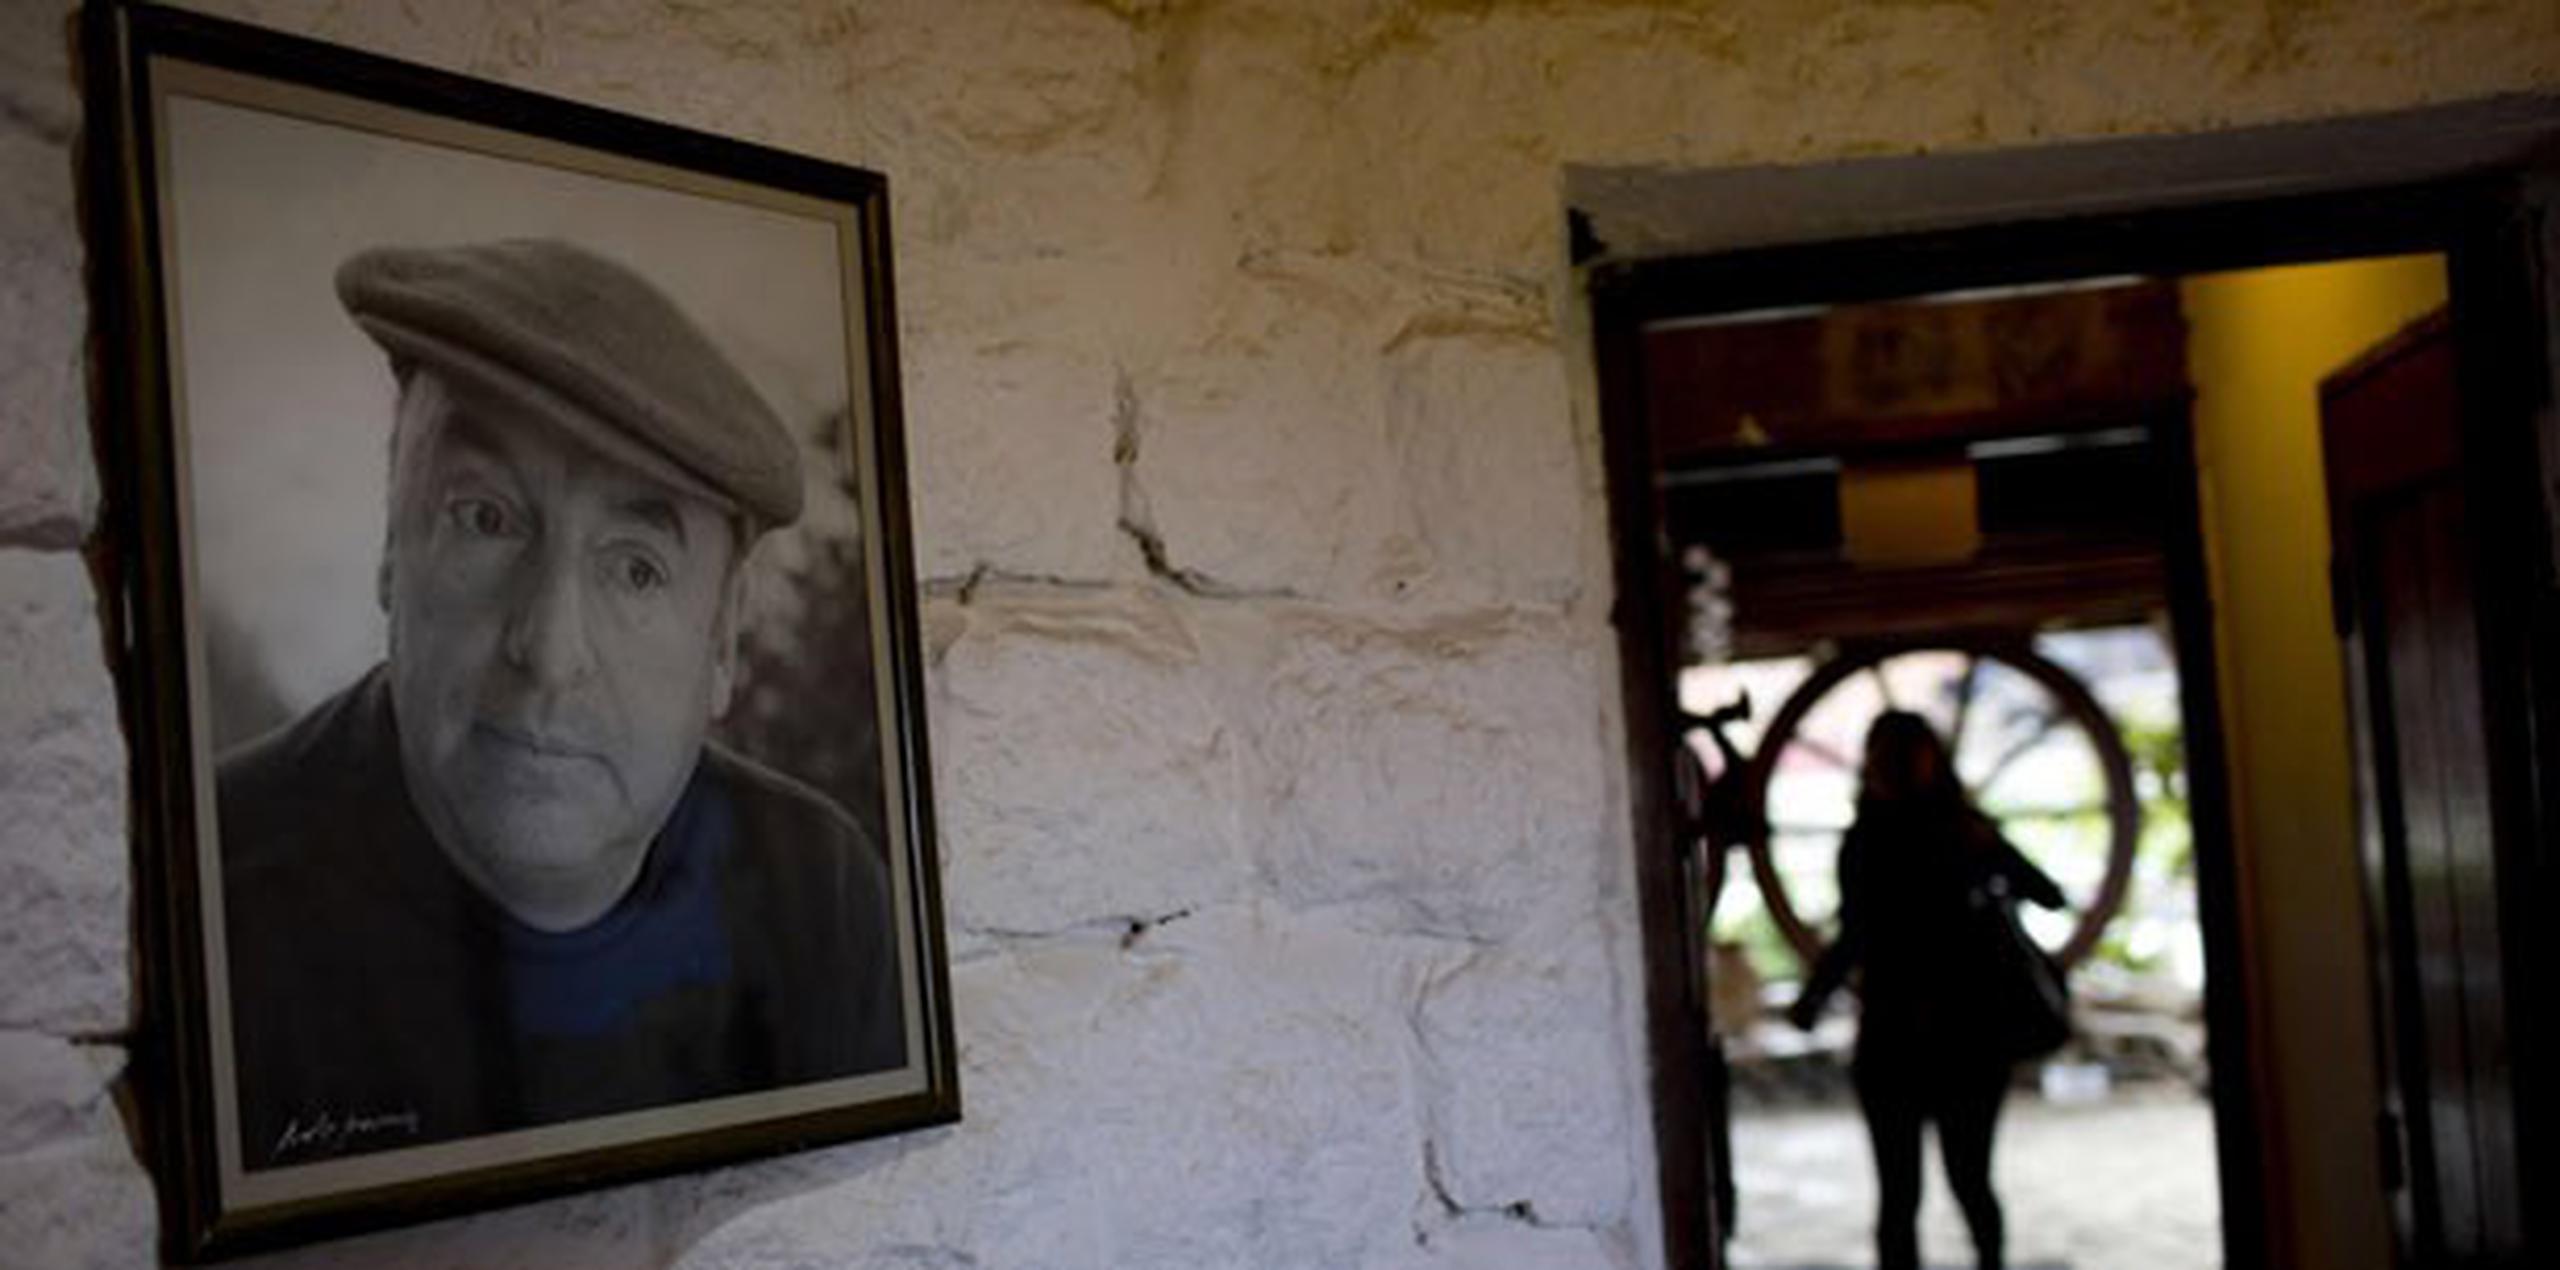 La semana pasada, la Fundación Pablo Neruda pidió que los restos del poeta sean devueltos a su sepulcro de Isla Negra, por considerar que "ha pasado un tiempo más que prudencial" para que "vuelva a descansar en paz". (AP Photo/Natacha Pisarenko)
